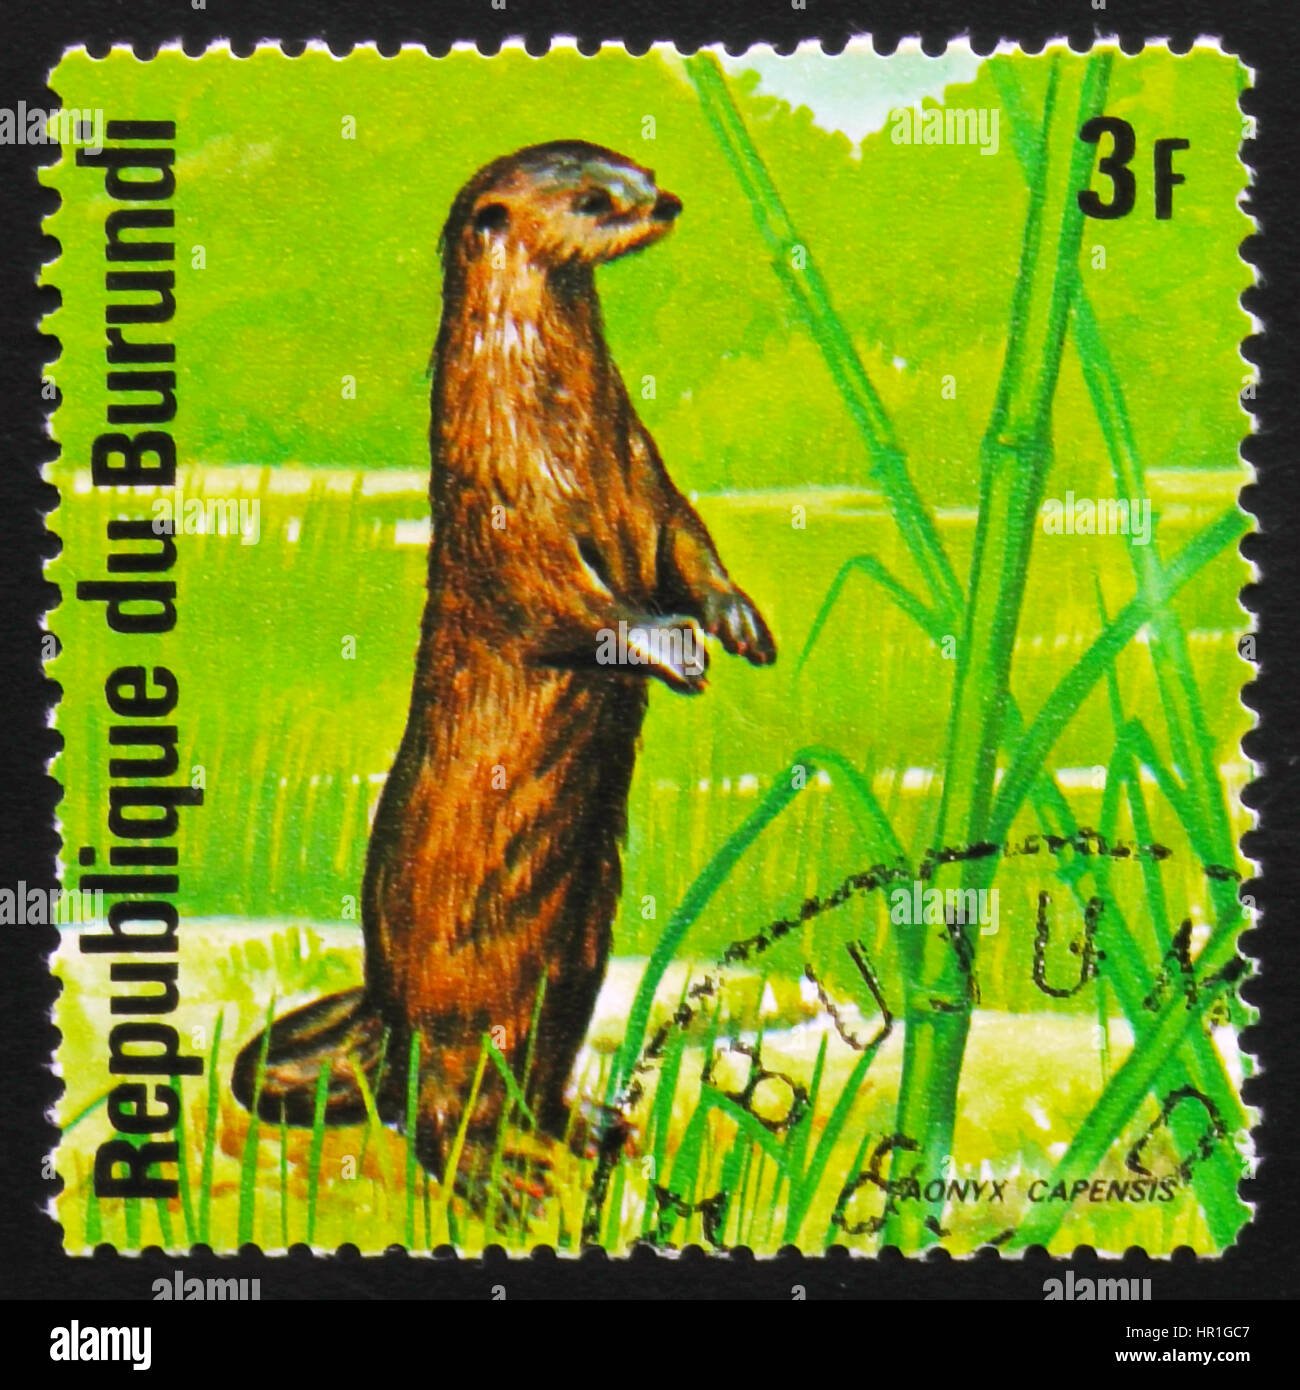 Moskau, Russland - 19. Februar 2017: Eine Briefmarke gedruckt von Burundi zeigt afrikanischen clawless Otter (Aonyx Capensis), Serie Tiere Burundi, ca. 1975 Stockfoto